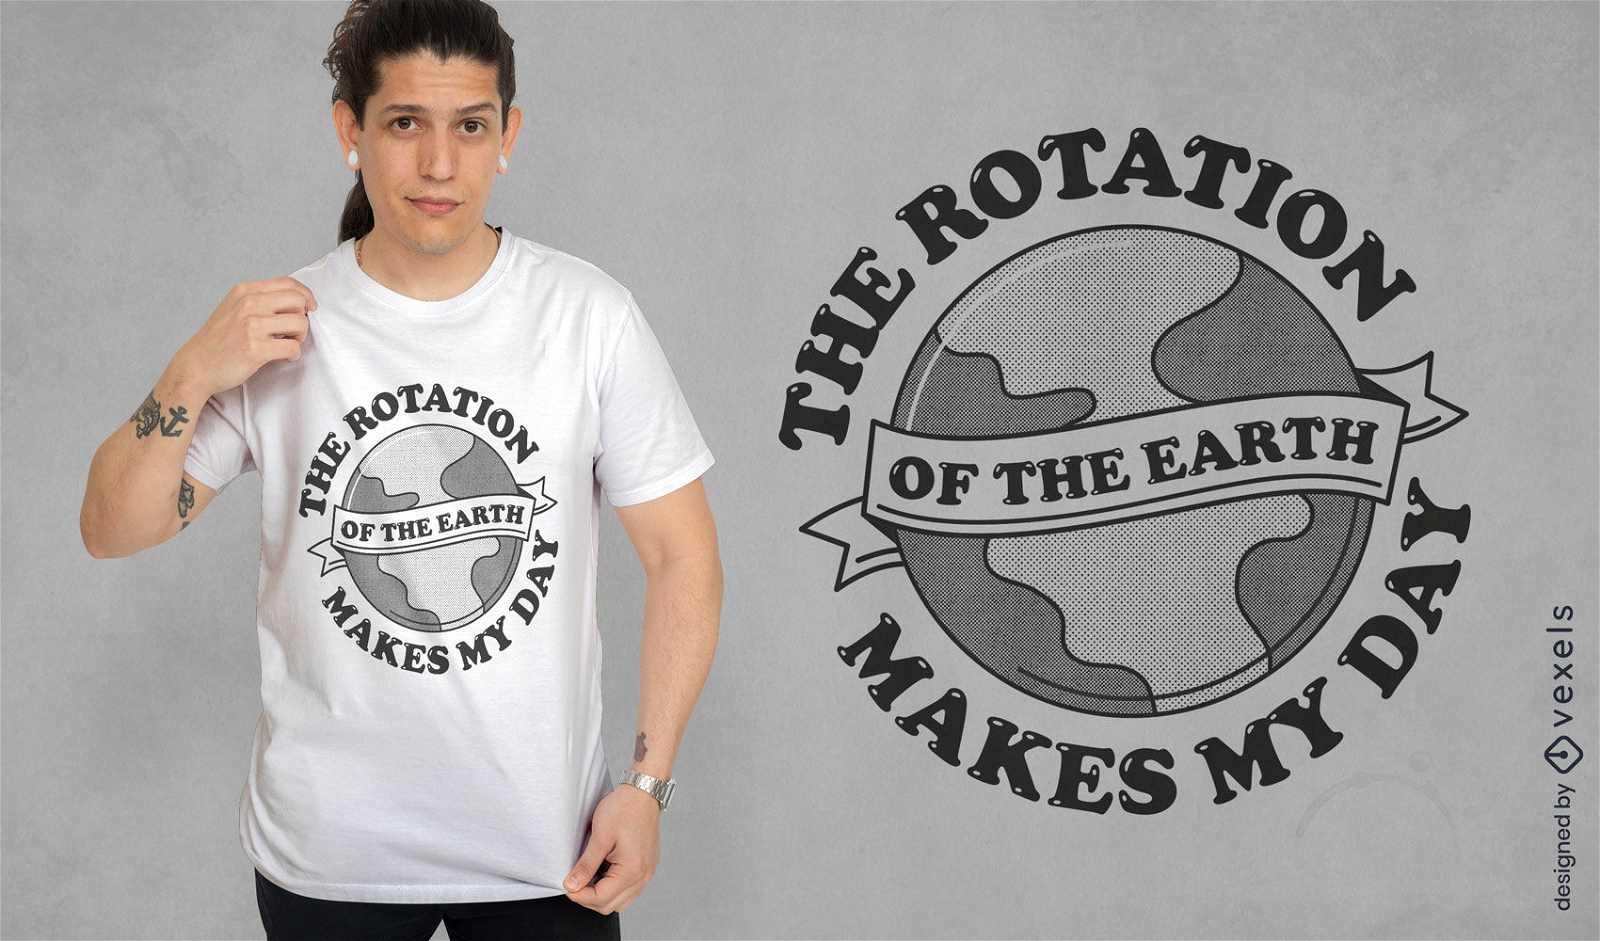 Dise?o de camiseta del planeta tierra en el espacio.